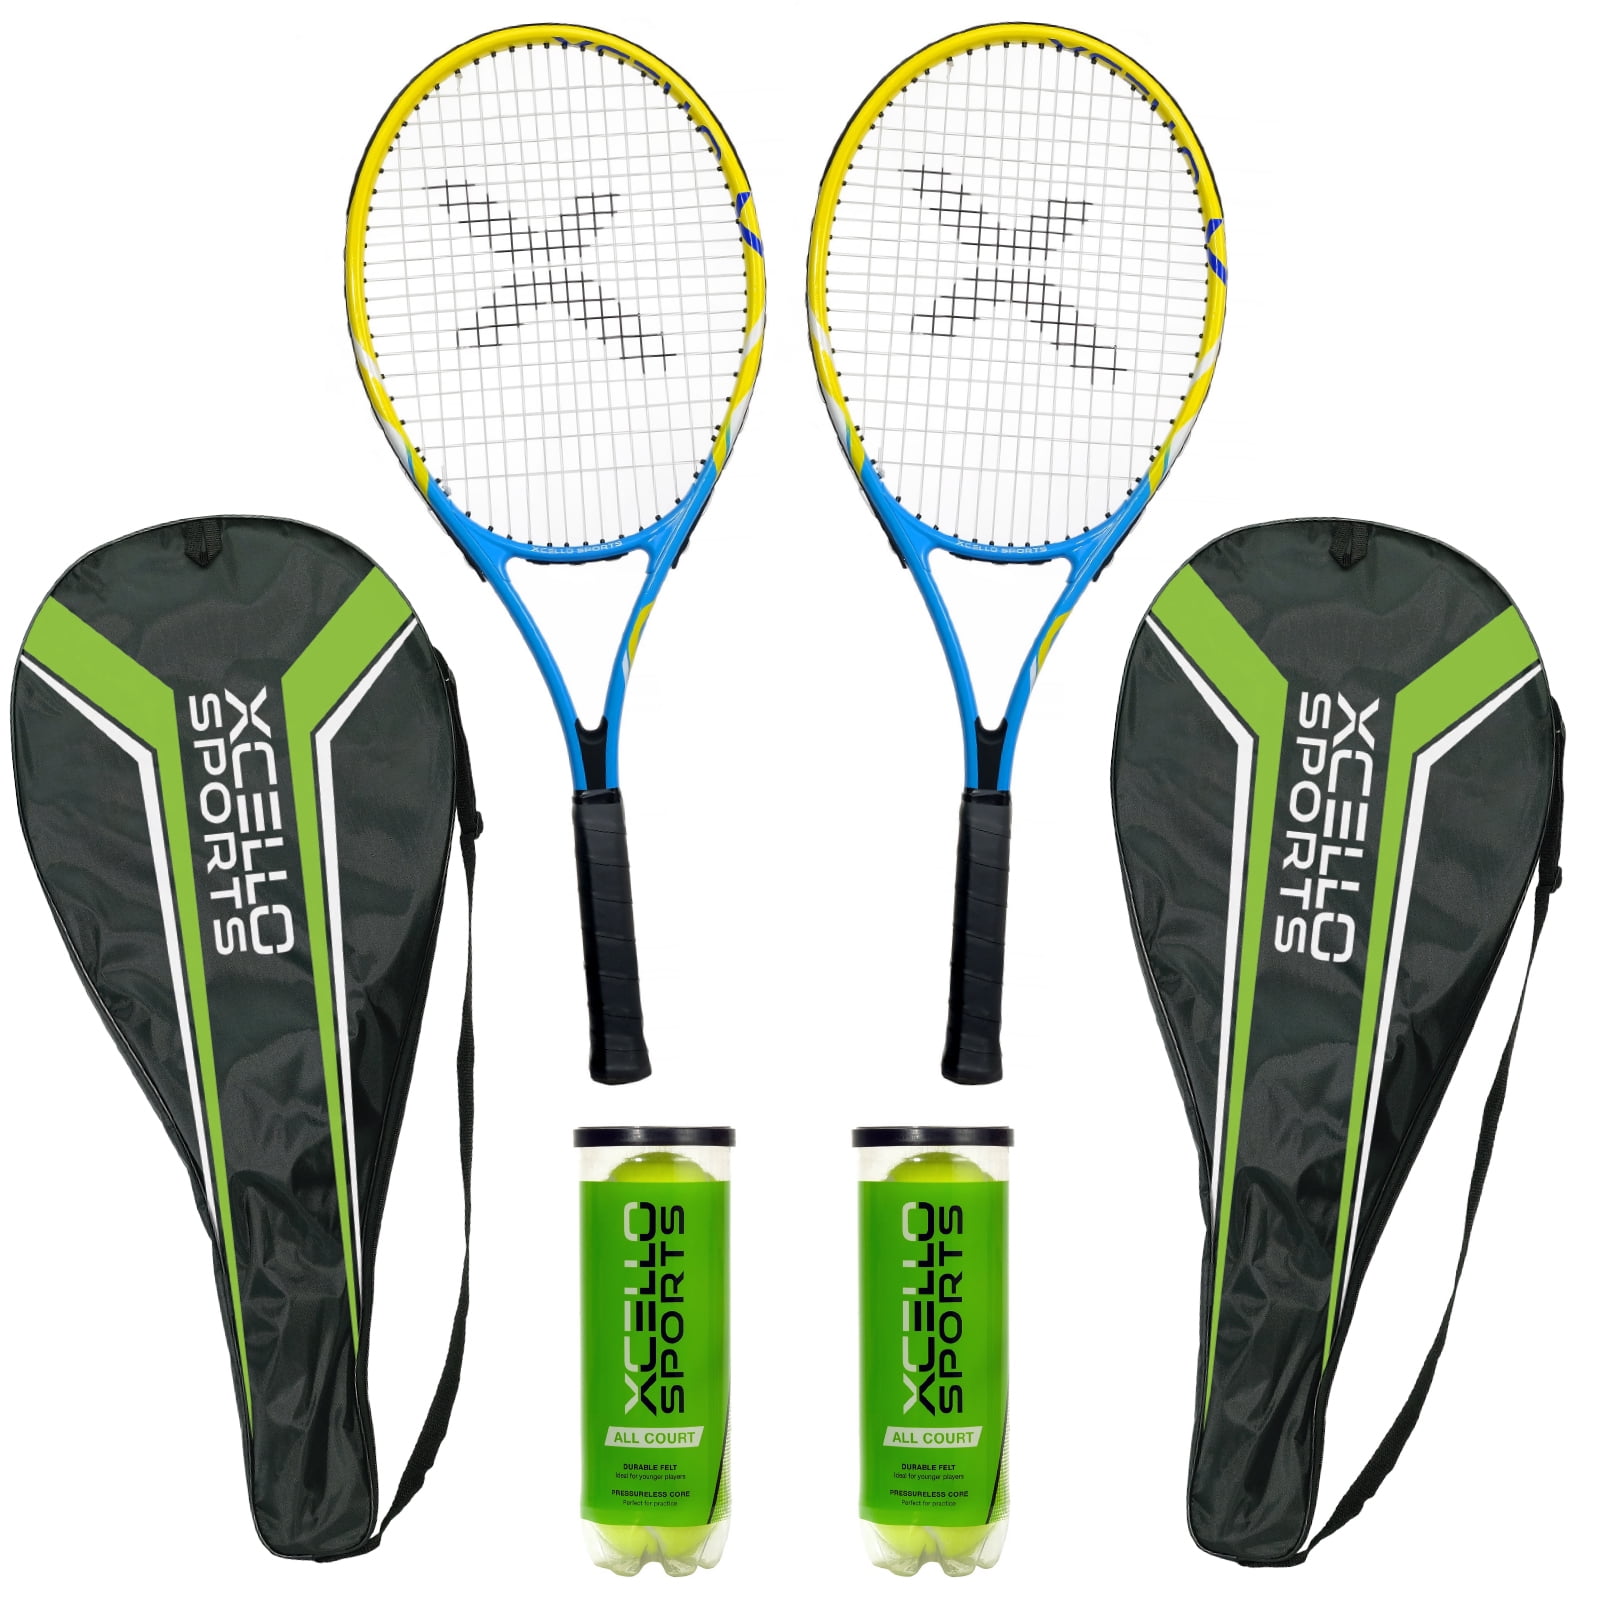 New 2 Player Tennis Set 2 Aluminium Rackets And 2 Tennis Balls 